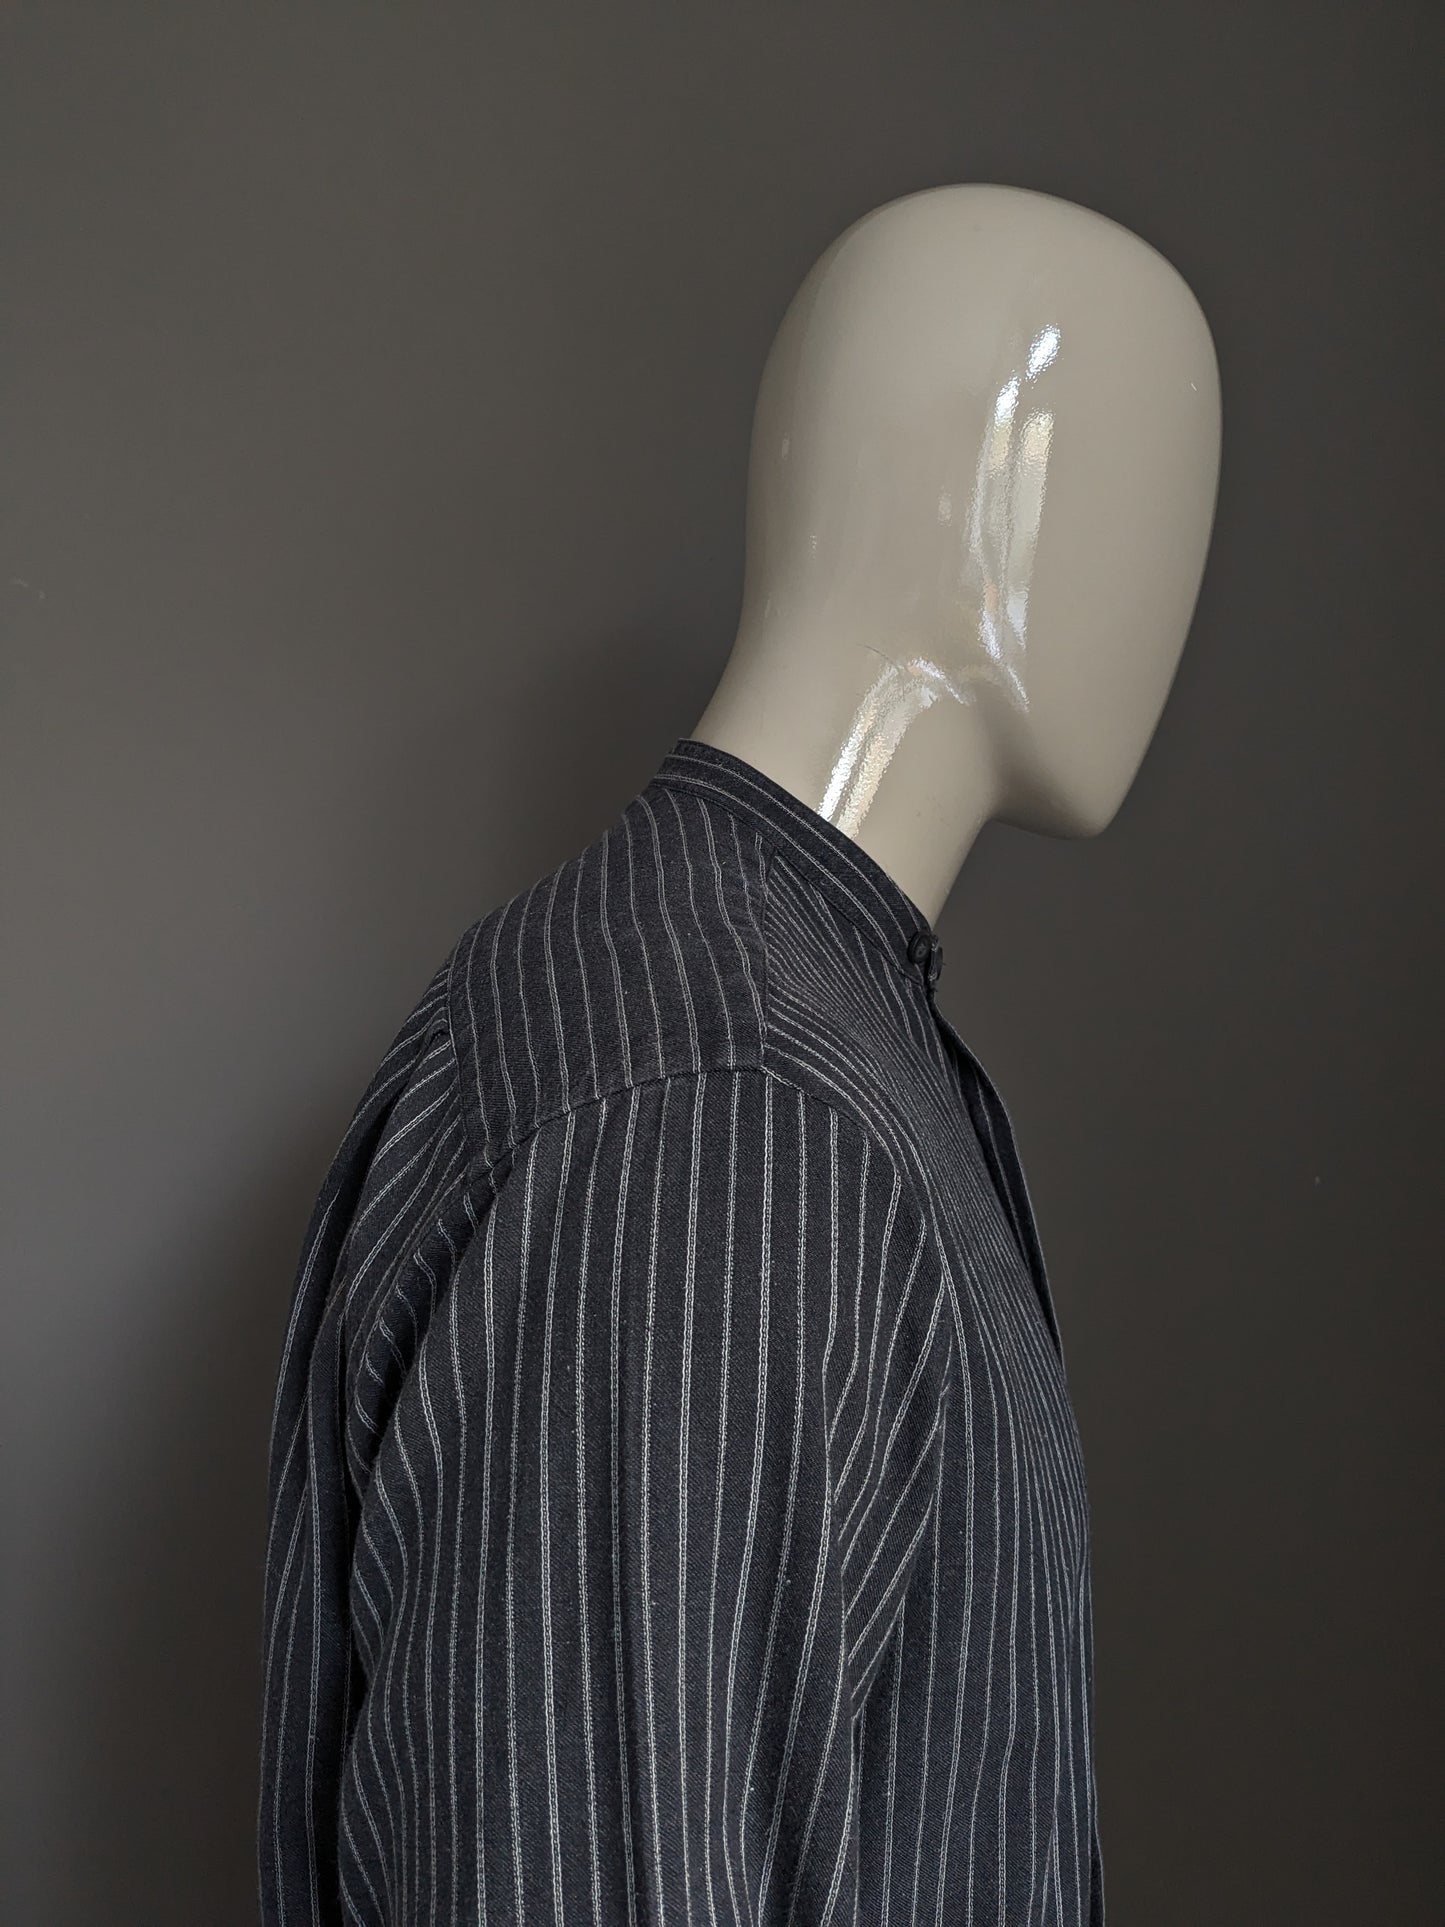 Boss vintage Hugo Boss Shirt avec Mao / Farmers / Collar debout. Rayé noir et blanc. Taille M / L.